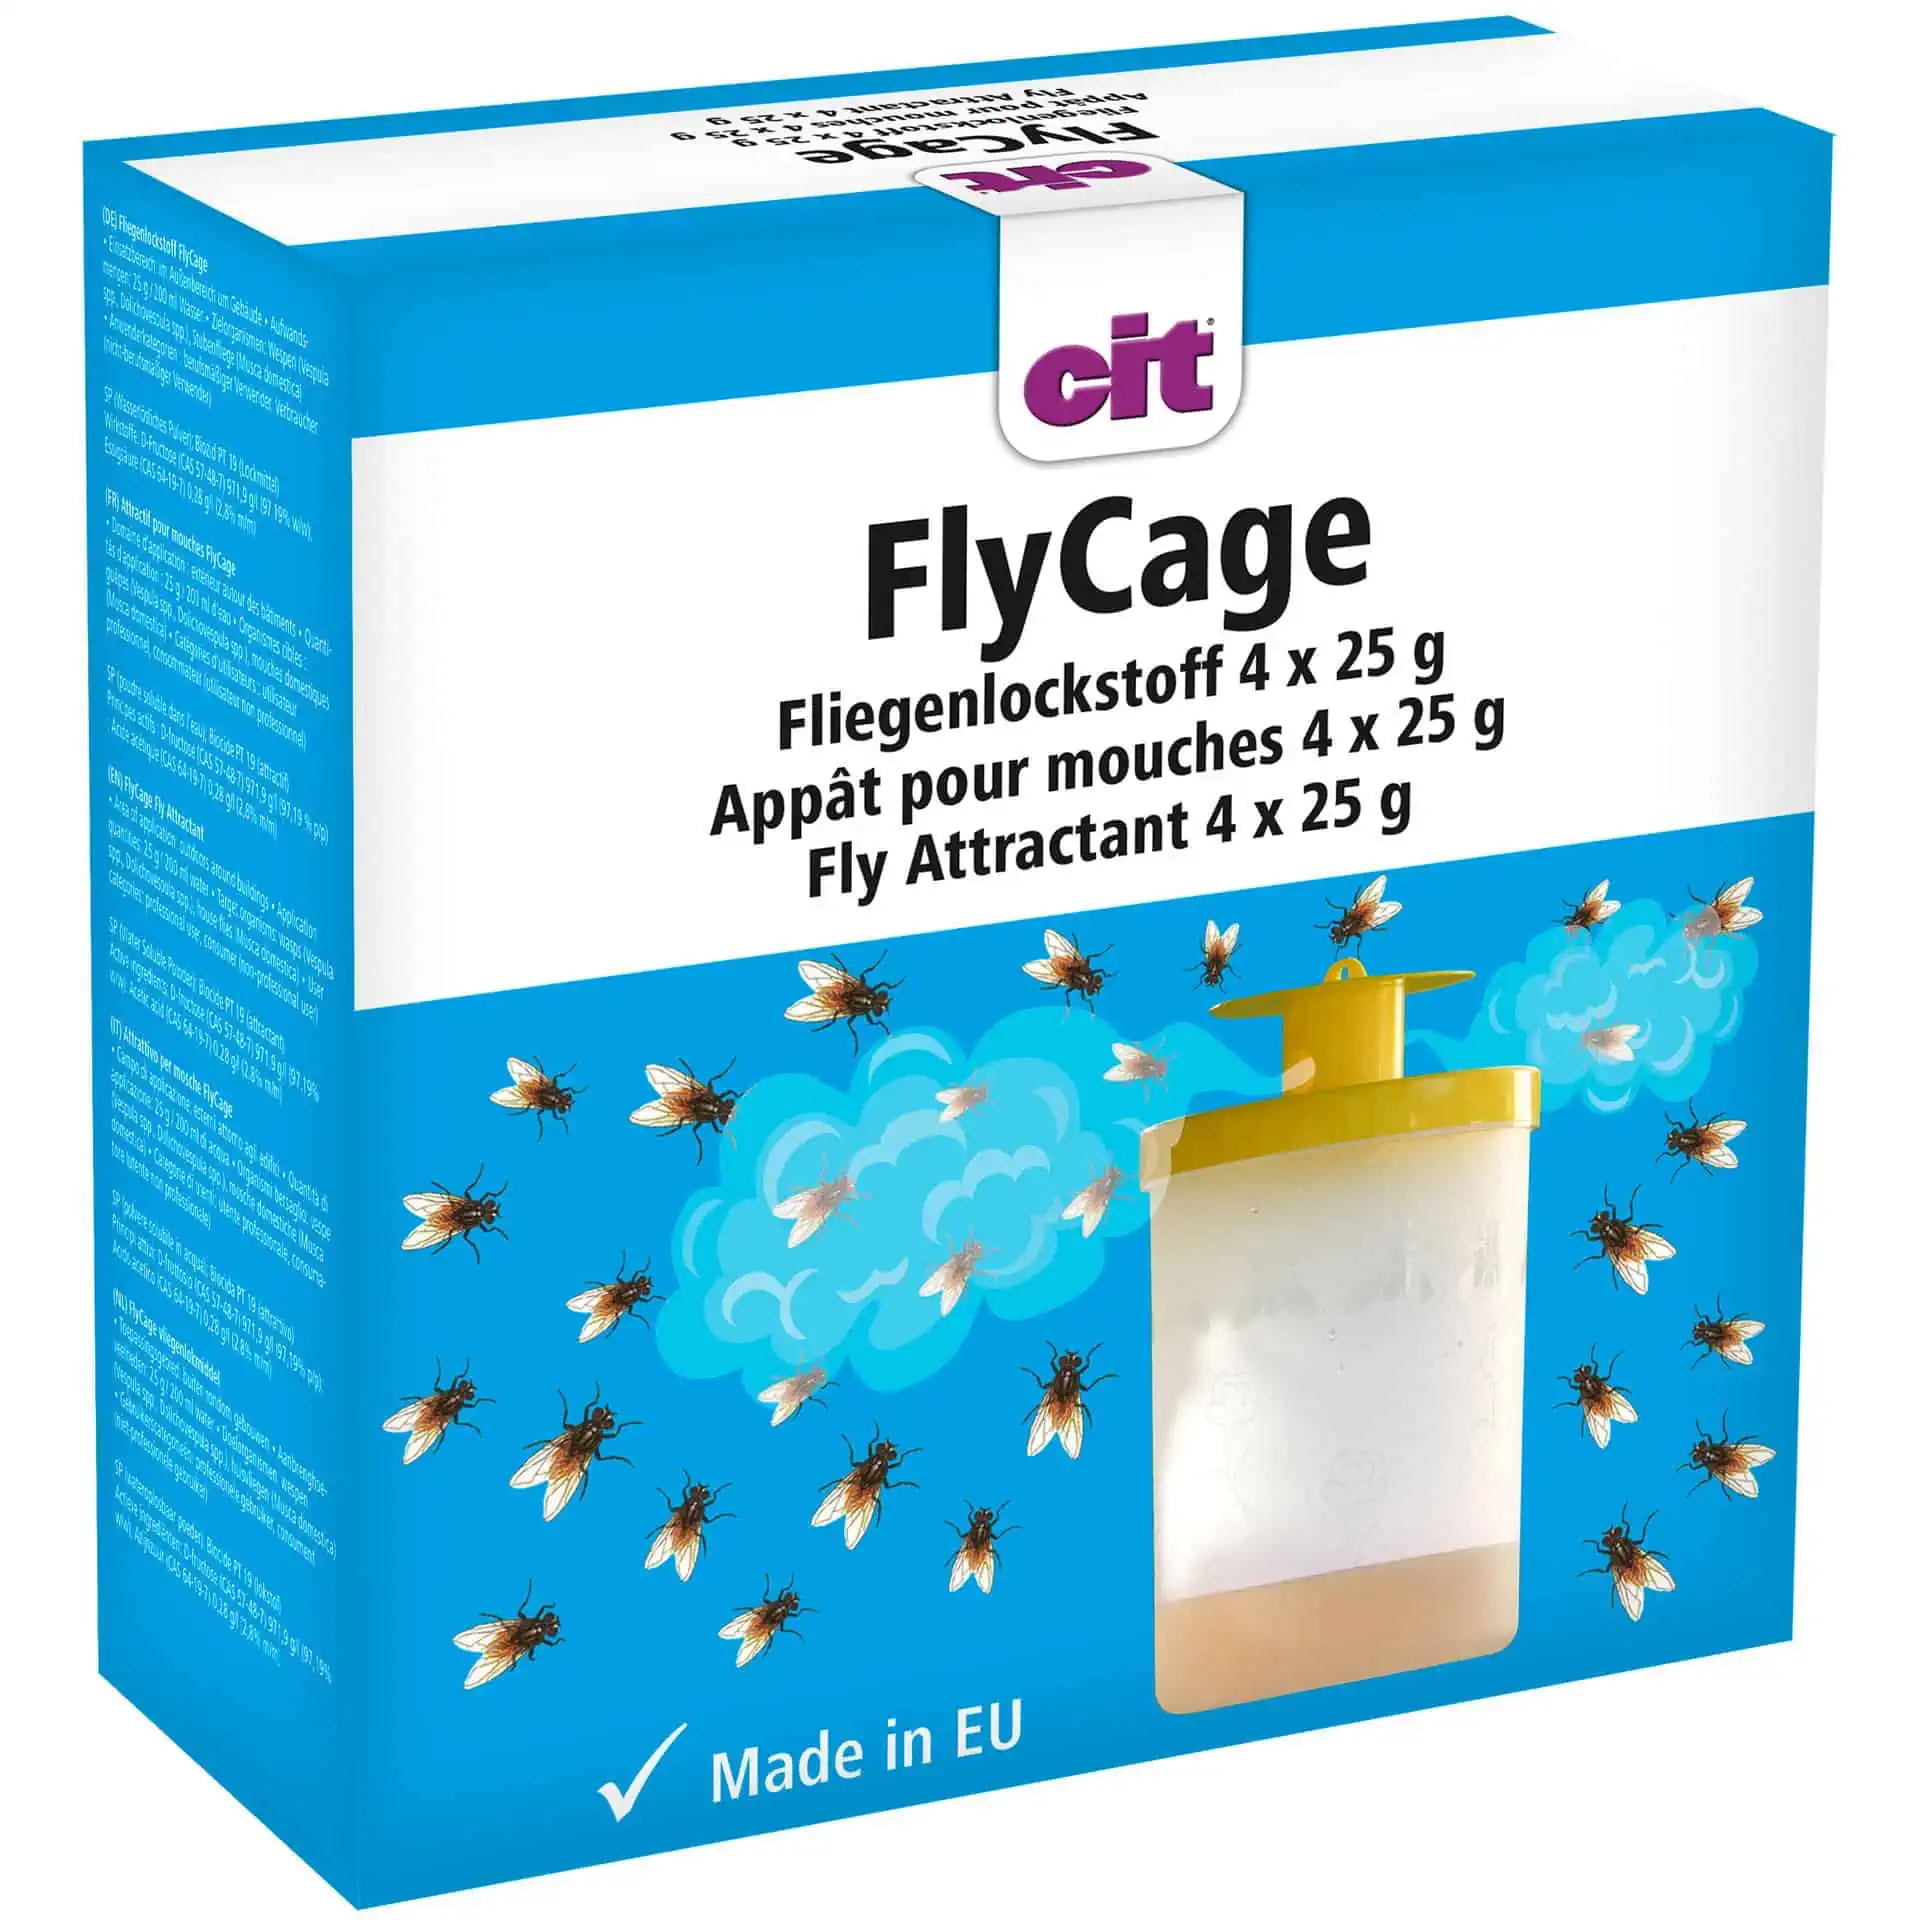 CIT FlyCage légycsalogató csalétek 25 g (4 db)